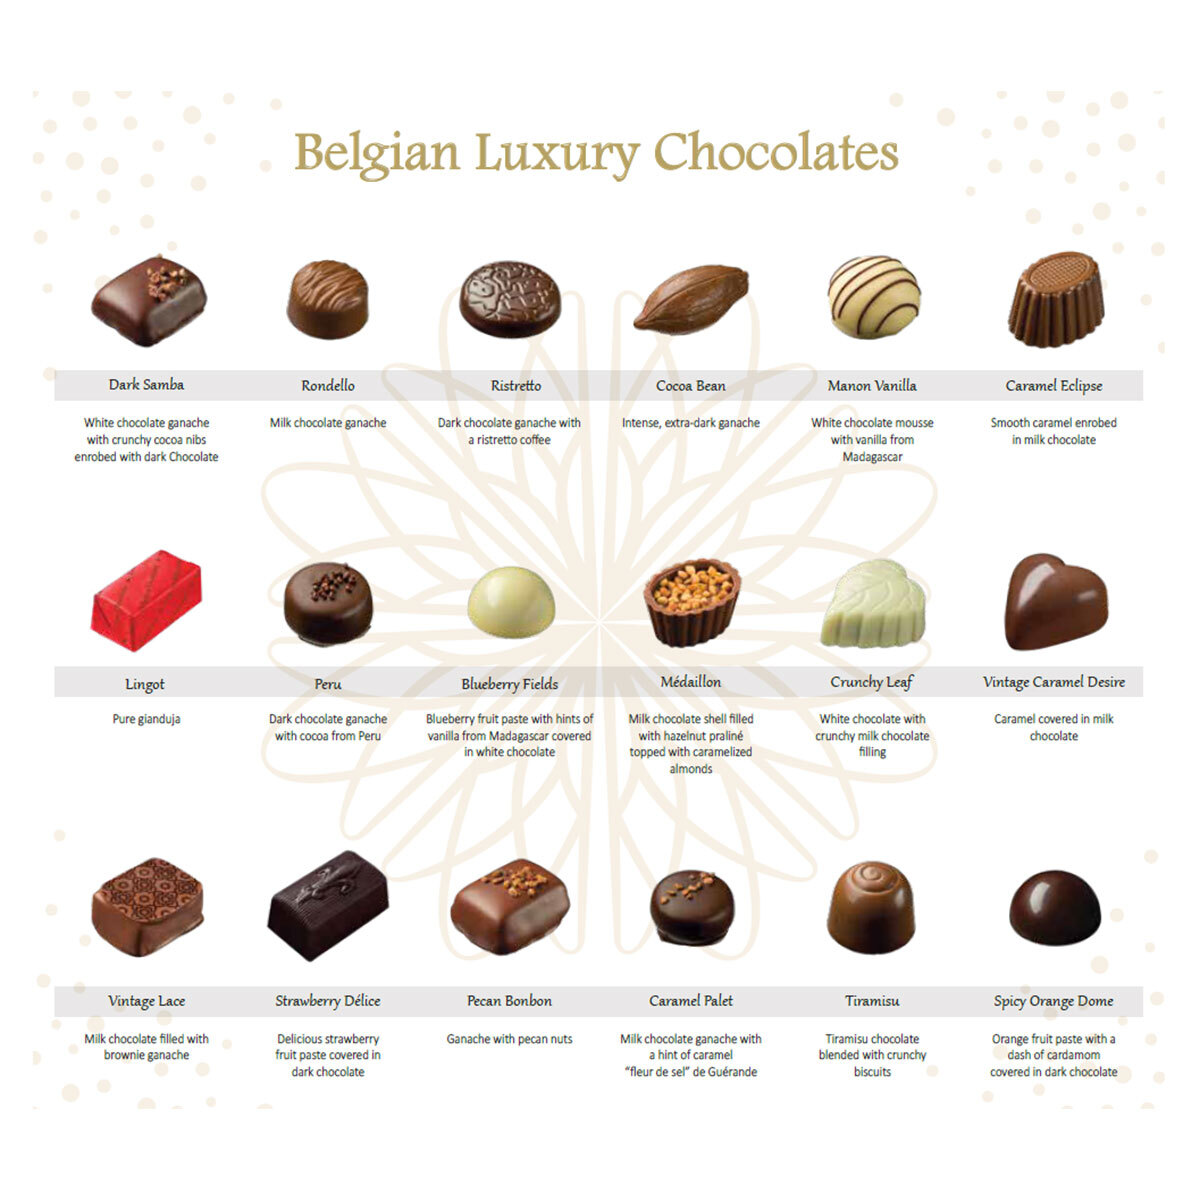 Kirkland Signature Luxury Belgian Chocolates in Red Gift Box, 570g